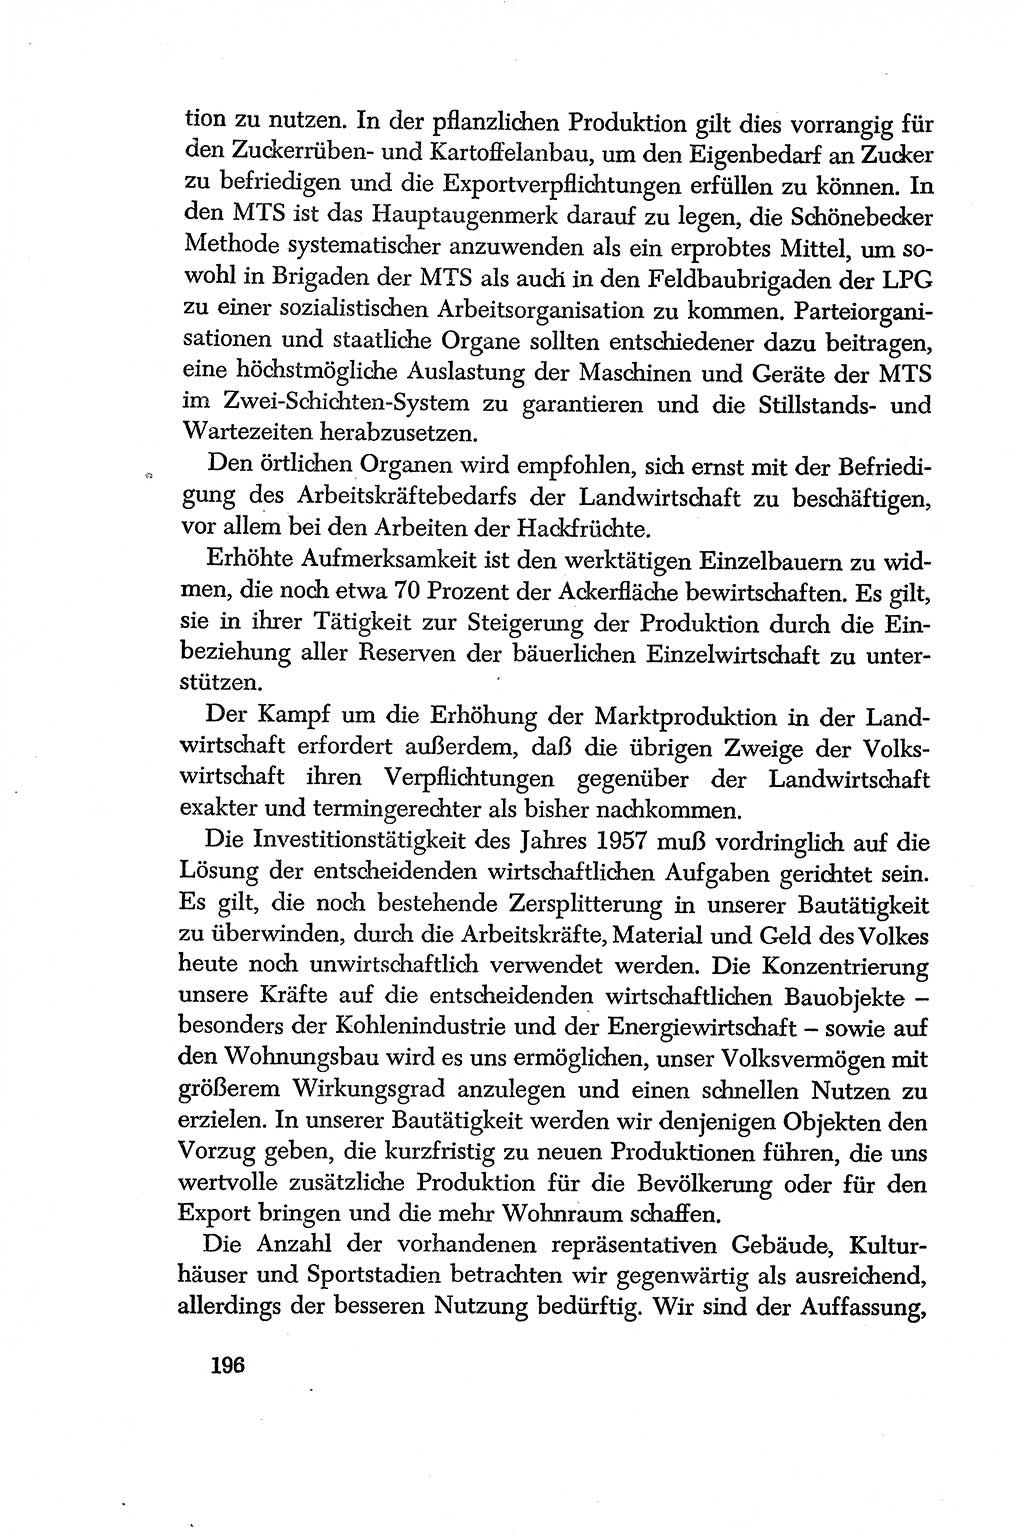 Dokumente der Sozialistischen Einheitspartei Deutschlands (SED) [Deutsche Demokratische Republik (DDR)] 1956-1957, Seite 196 (Dok. SED DDR 1956-1957, S. 196)